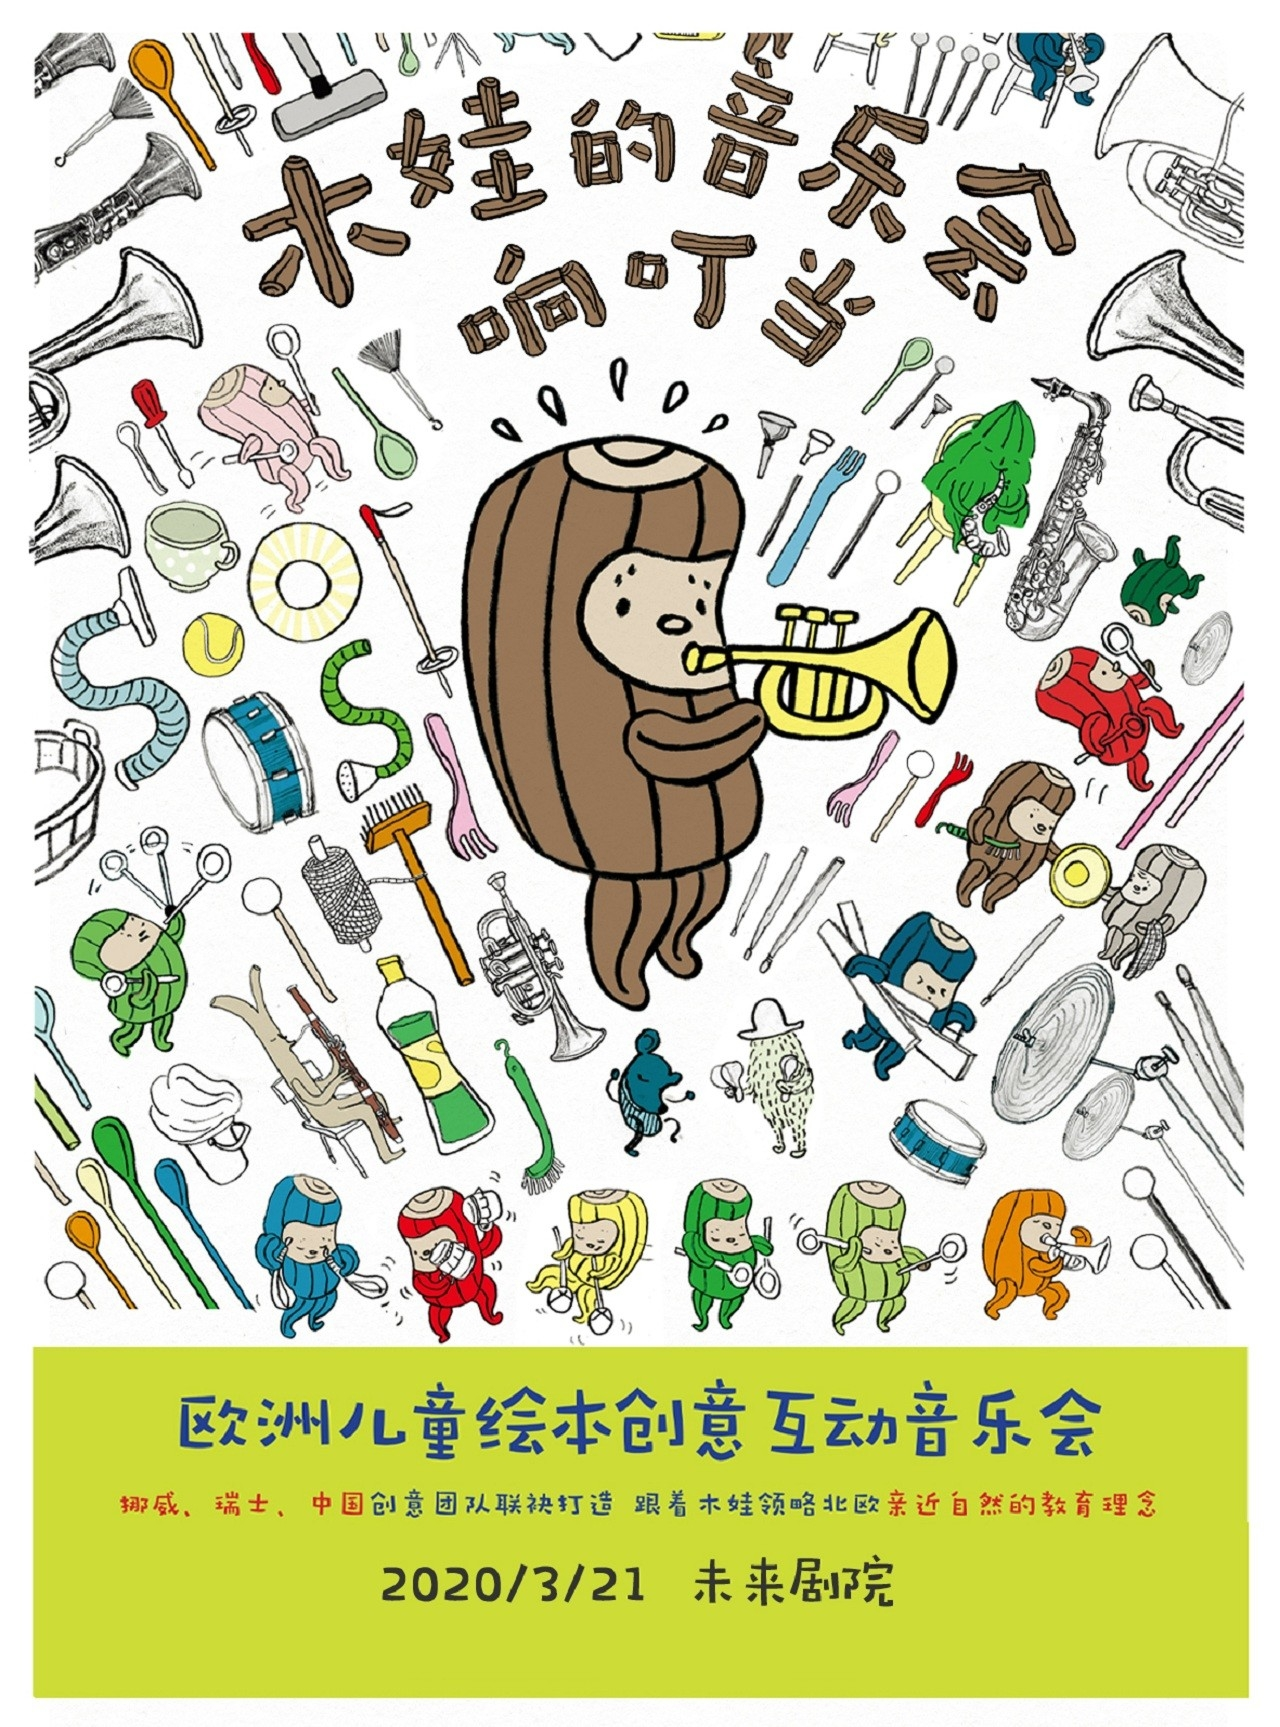 欧洲儿童绘本创意互动音乐会《木娃的音乐会响叮当》-北京站